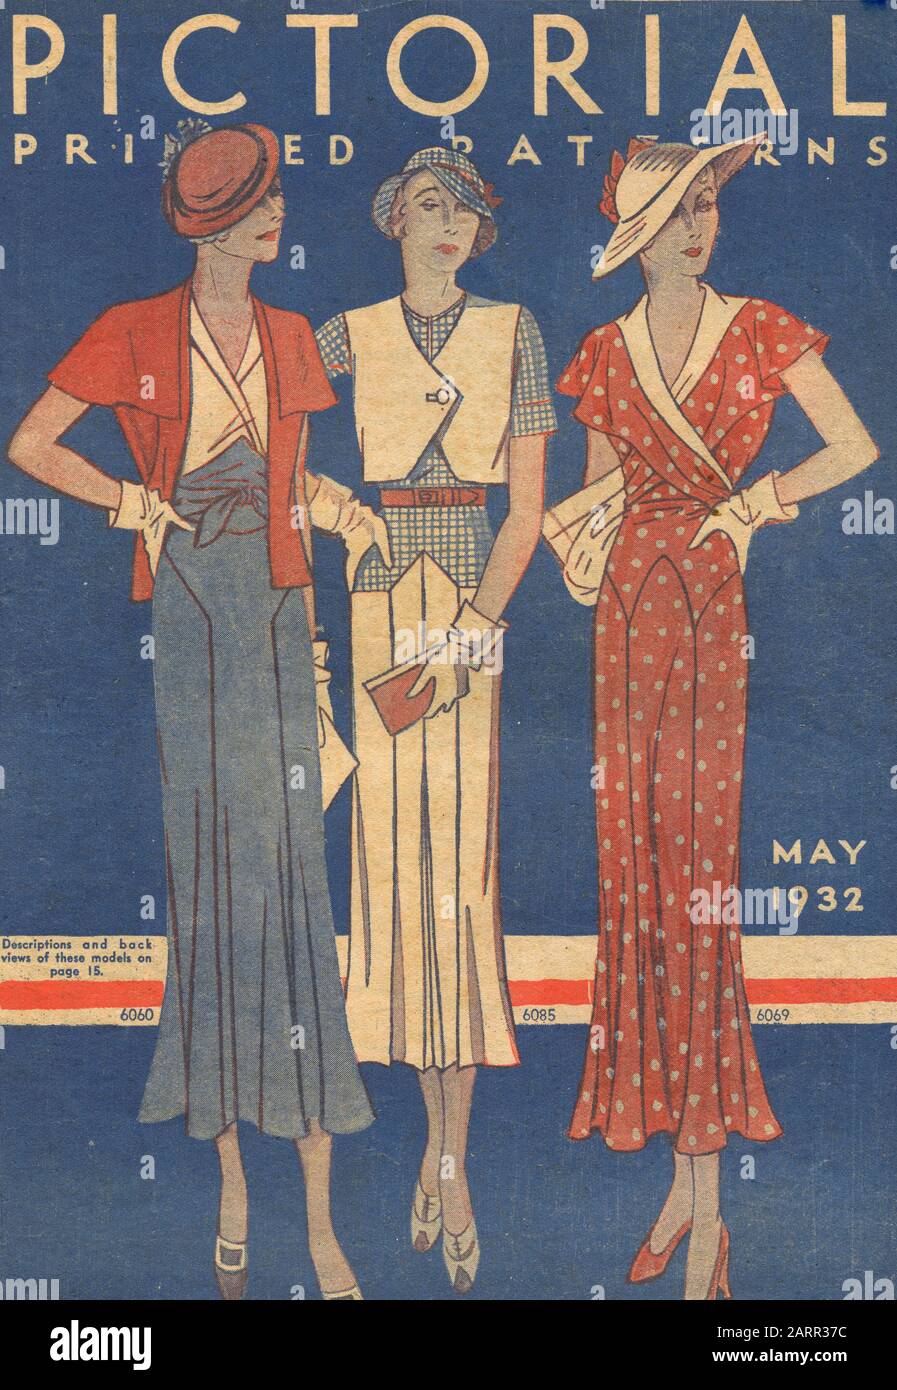 Donna moda sulla copertina della rivista Pittorica, maggio 1932 Foto Stock